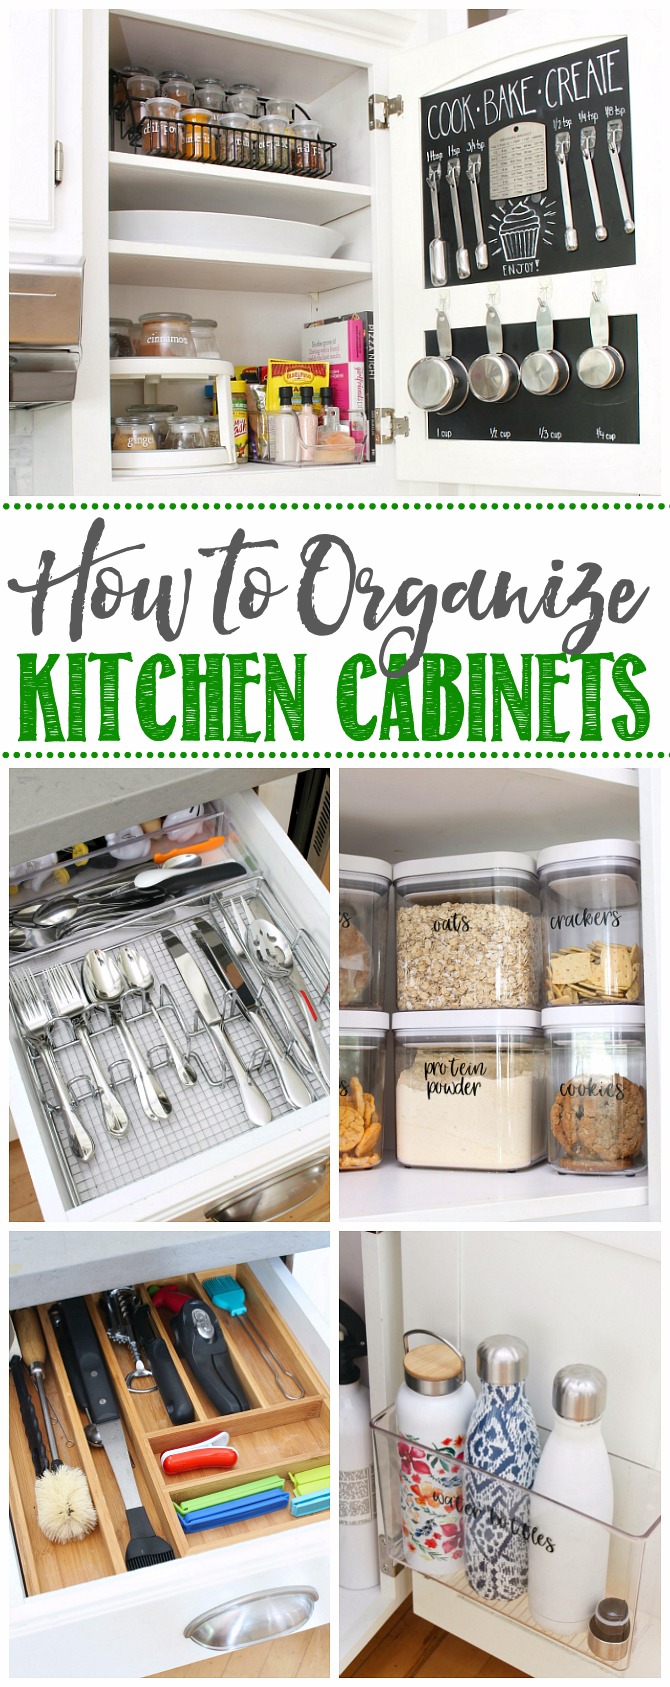 How To Organize Kitchen Cabinets, Lower Kitchen Cabinet Organization Ideas